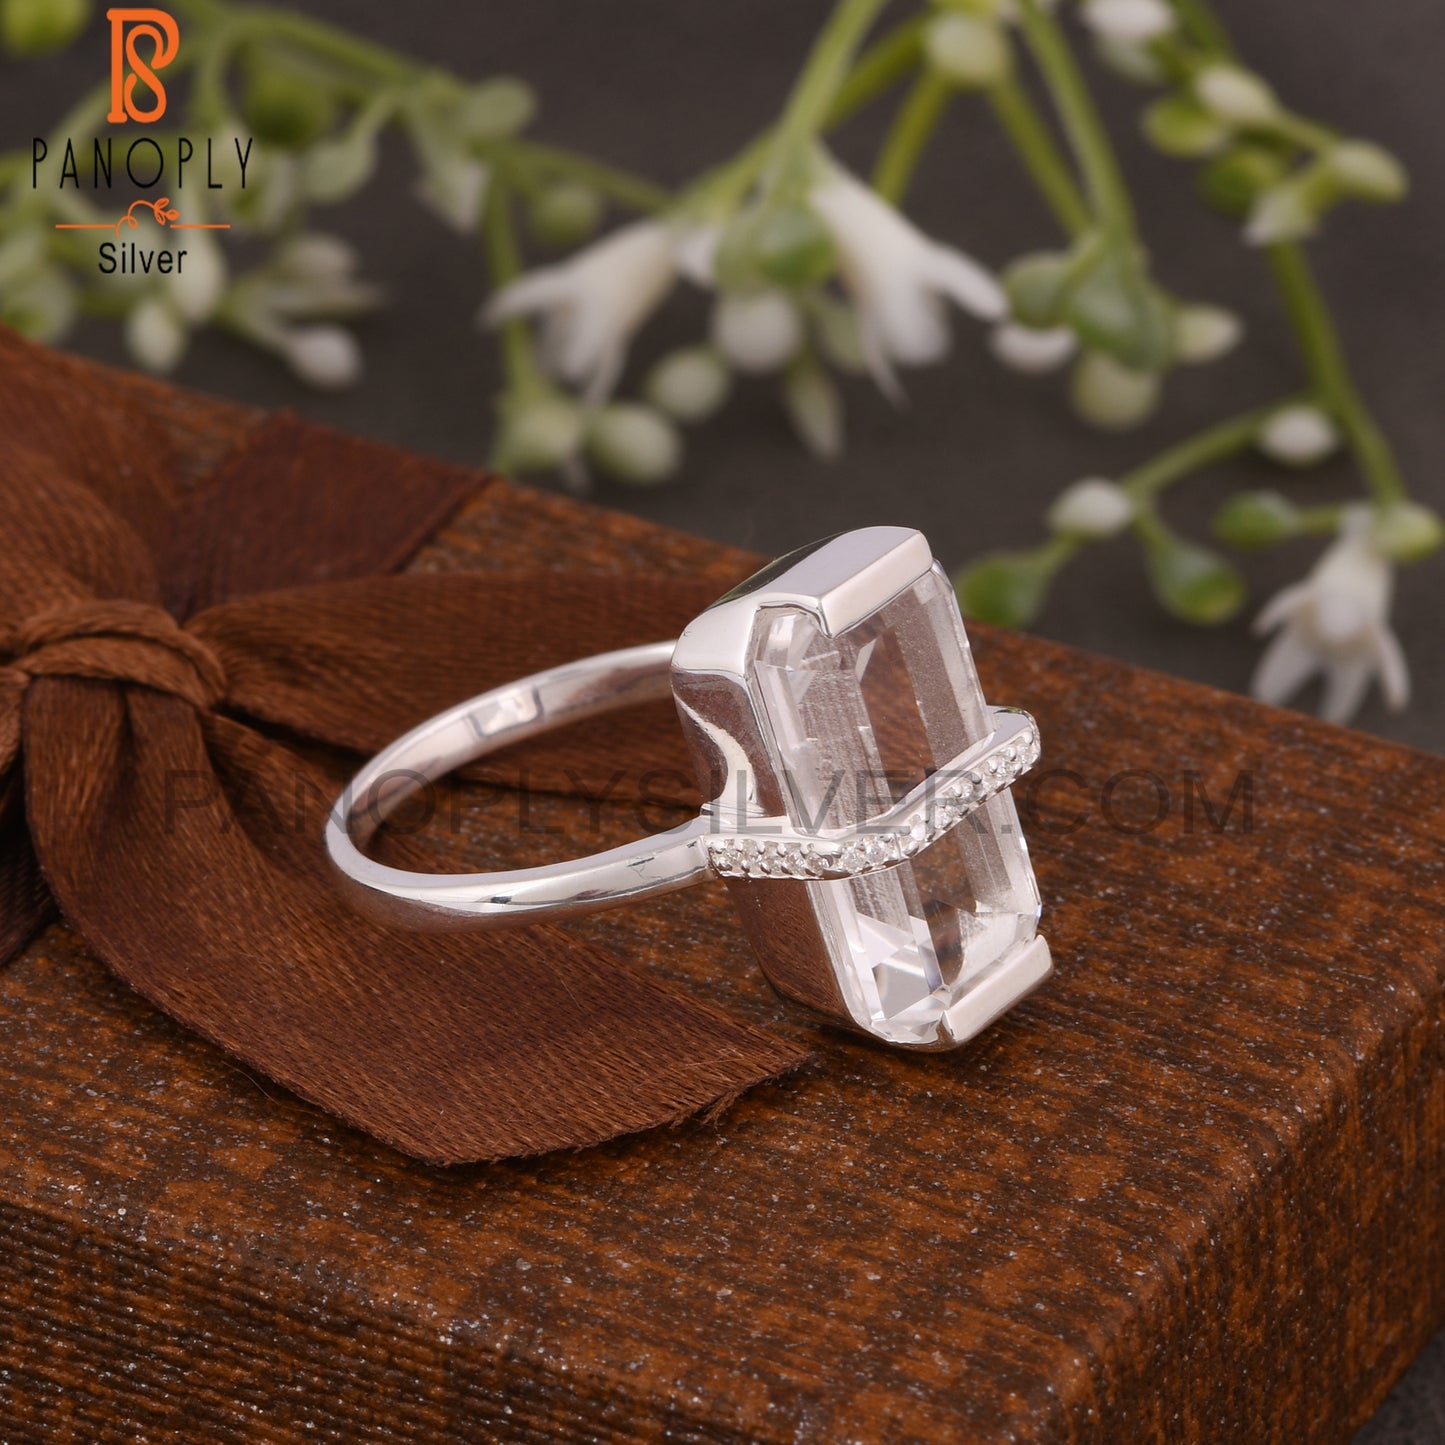 Crystal Quartz & Moissanite Octogan Shape 925 Silver Ring